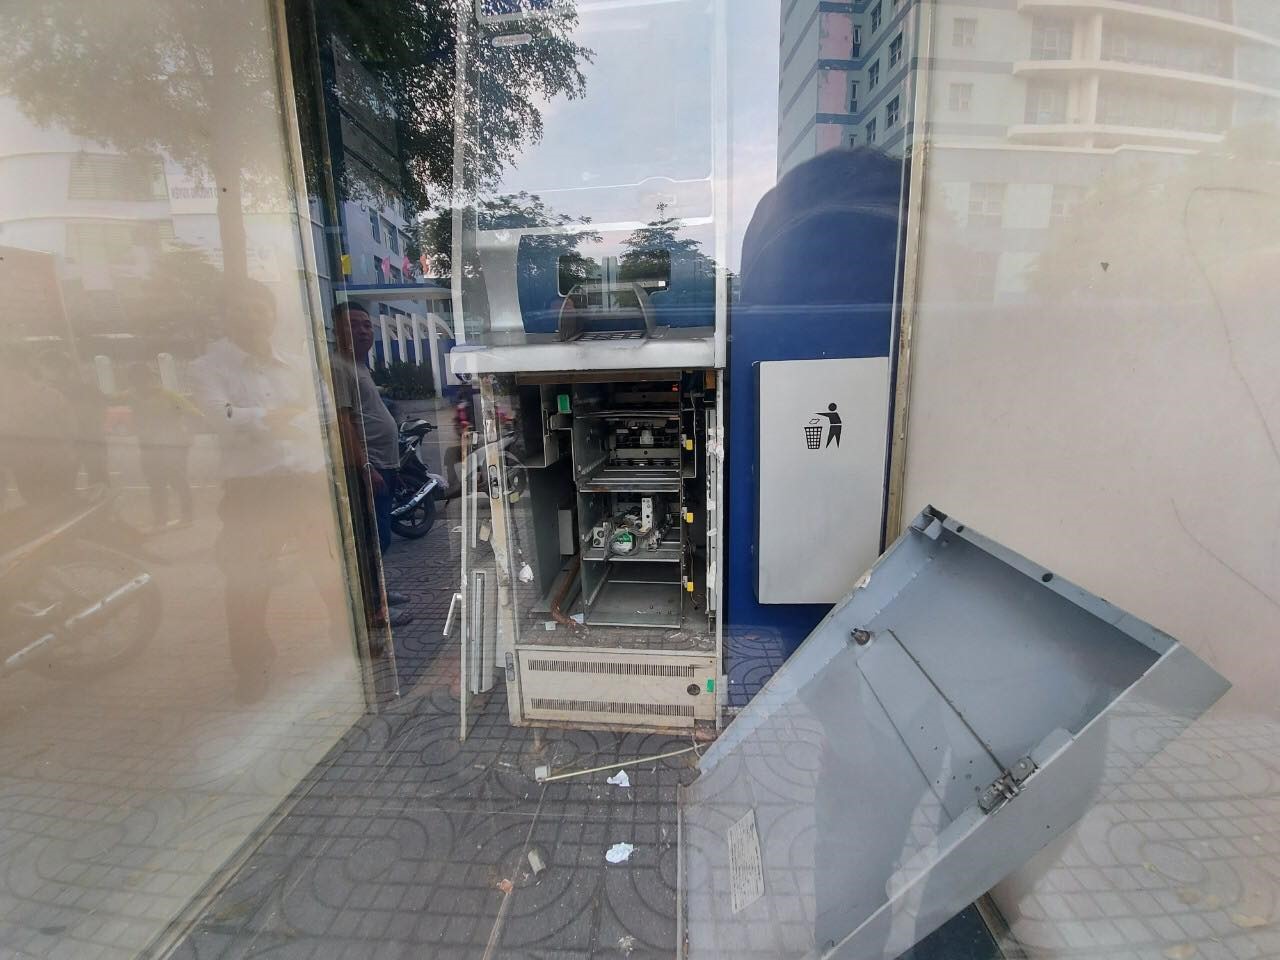 Tại hiện trường, cabin máy ATM của ngân hàng bị đập phá. Ảnh: Mai Hương